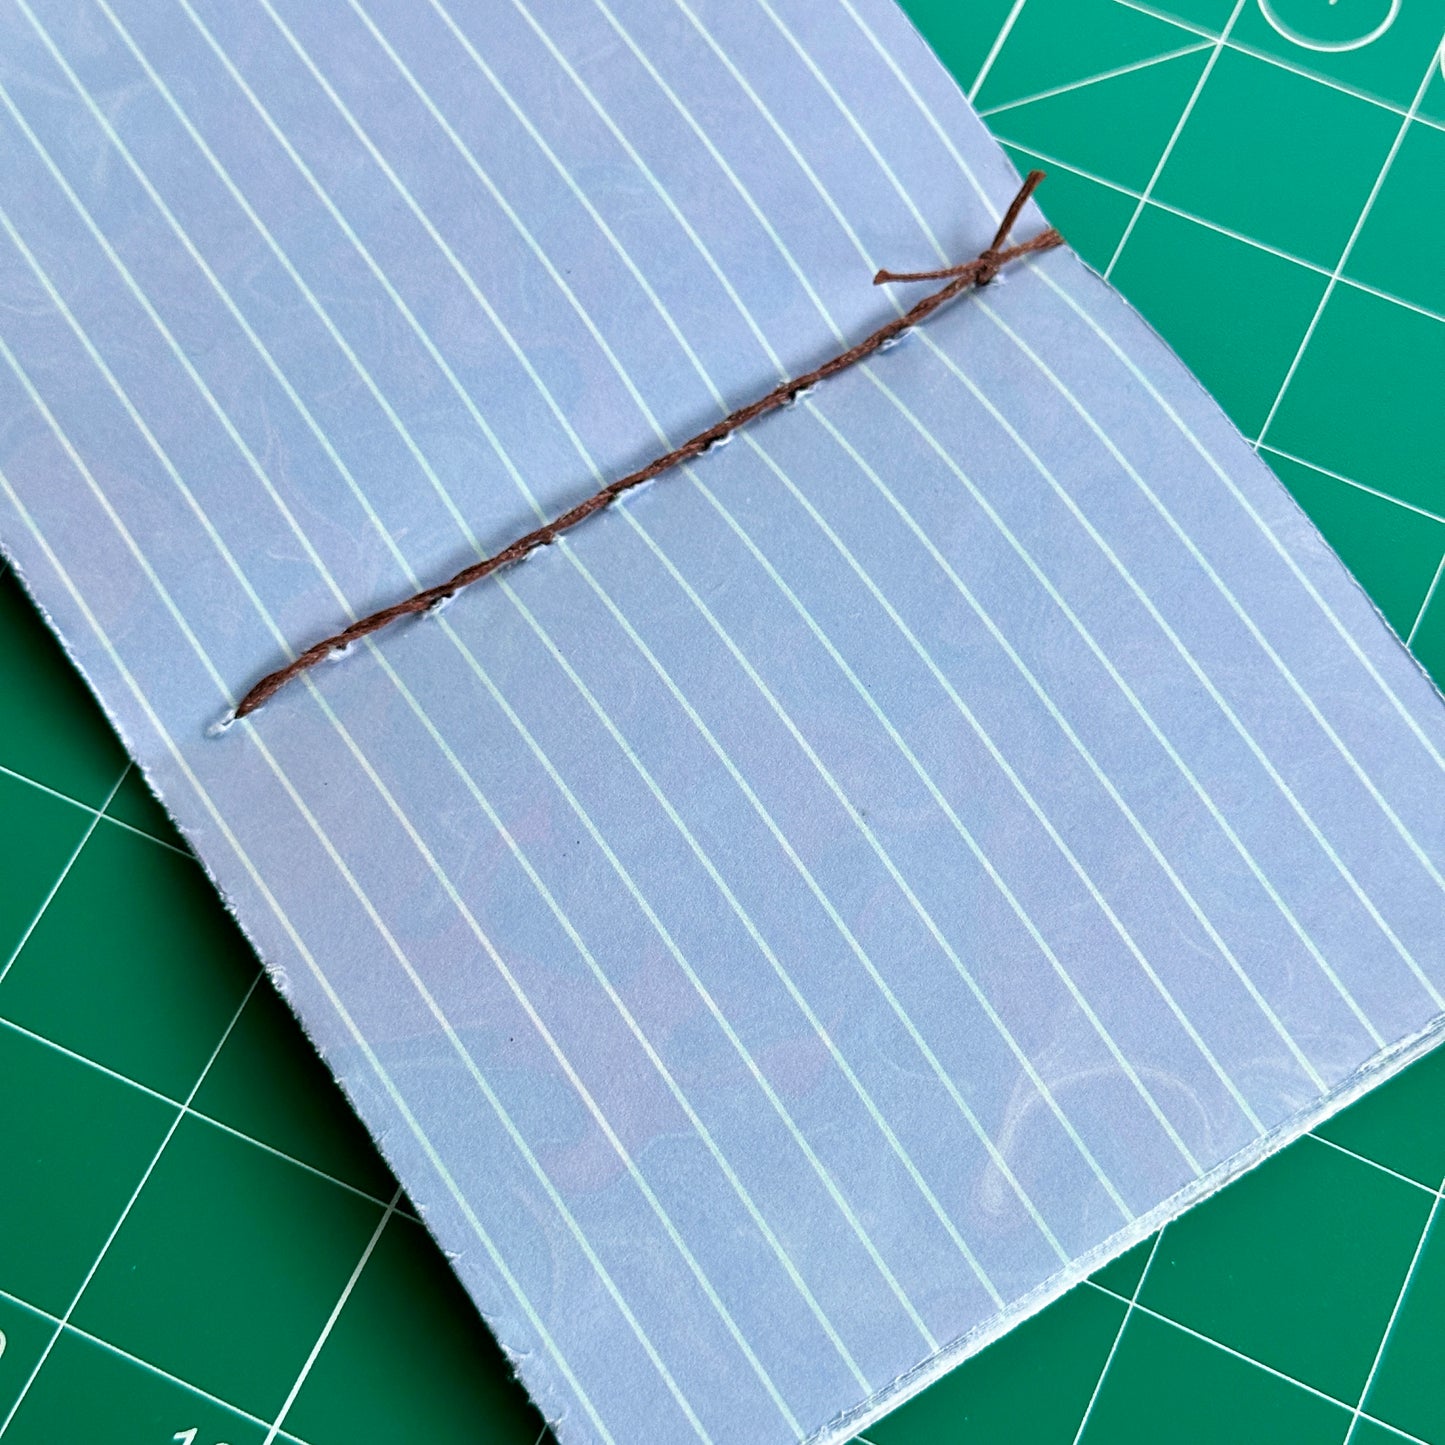 Mini cuaderno hecho a mano #6